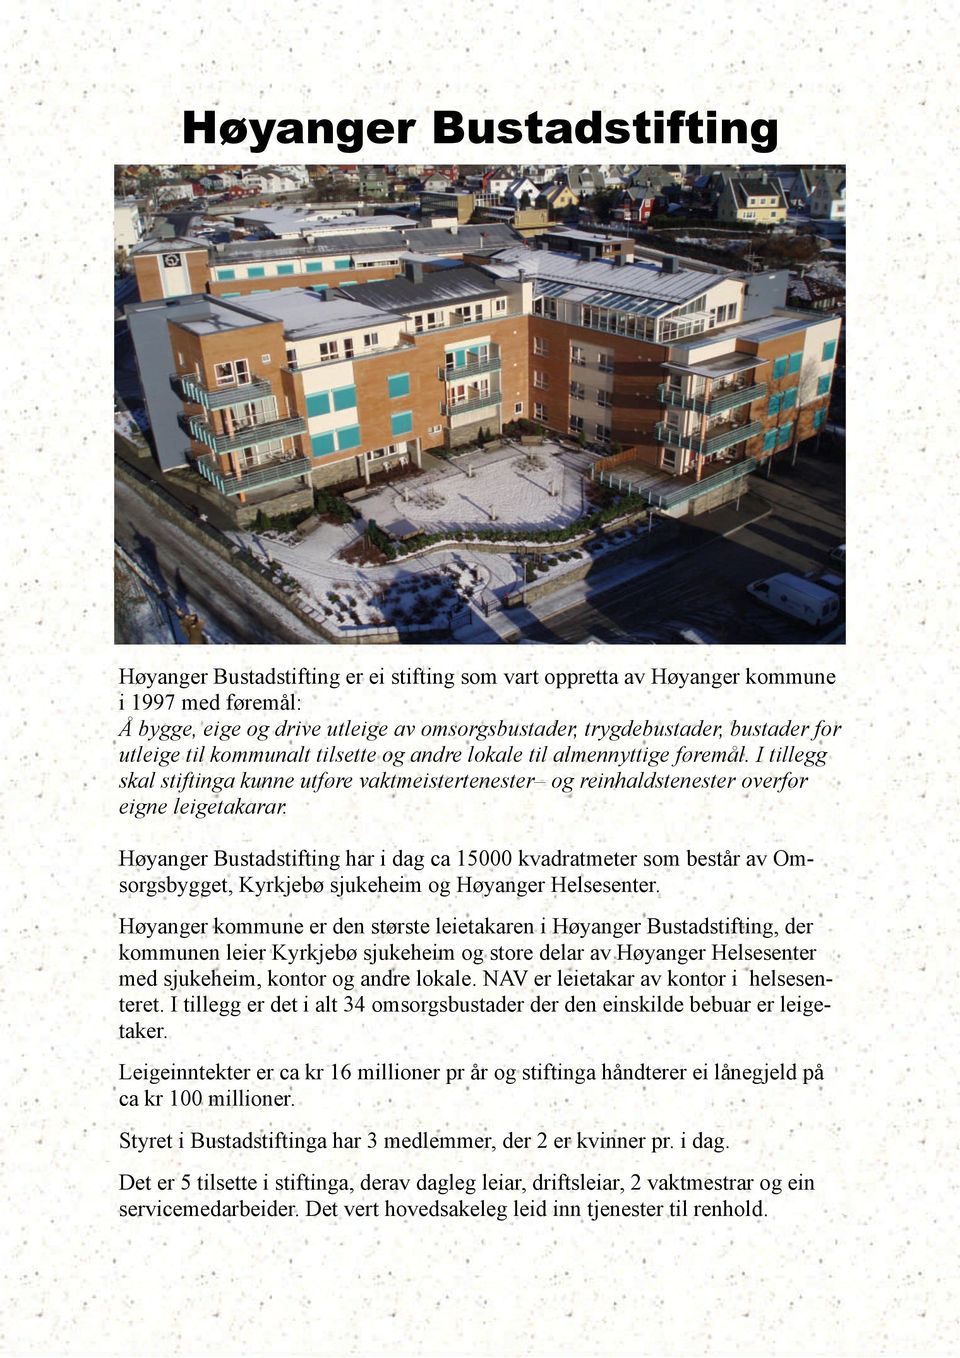 Høyanger Bustadstifting har i dag ca 15000 kvadratmeter som består av Omsorgsbygget, Kyrkjebø sjukeheim og Høyanger Helsesenter.